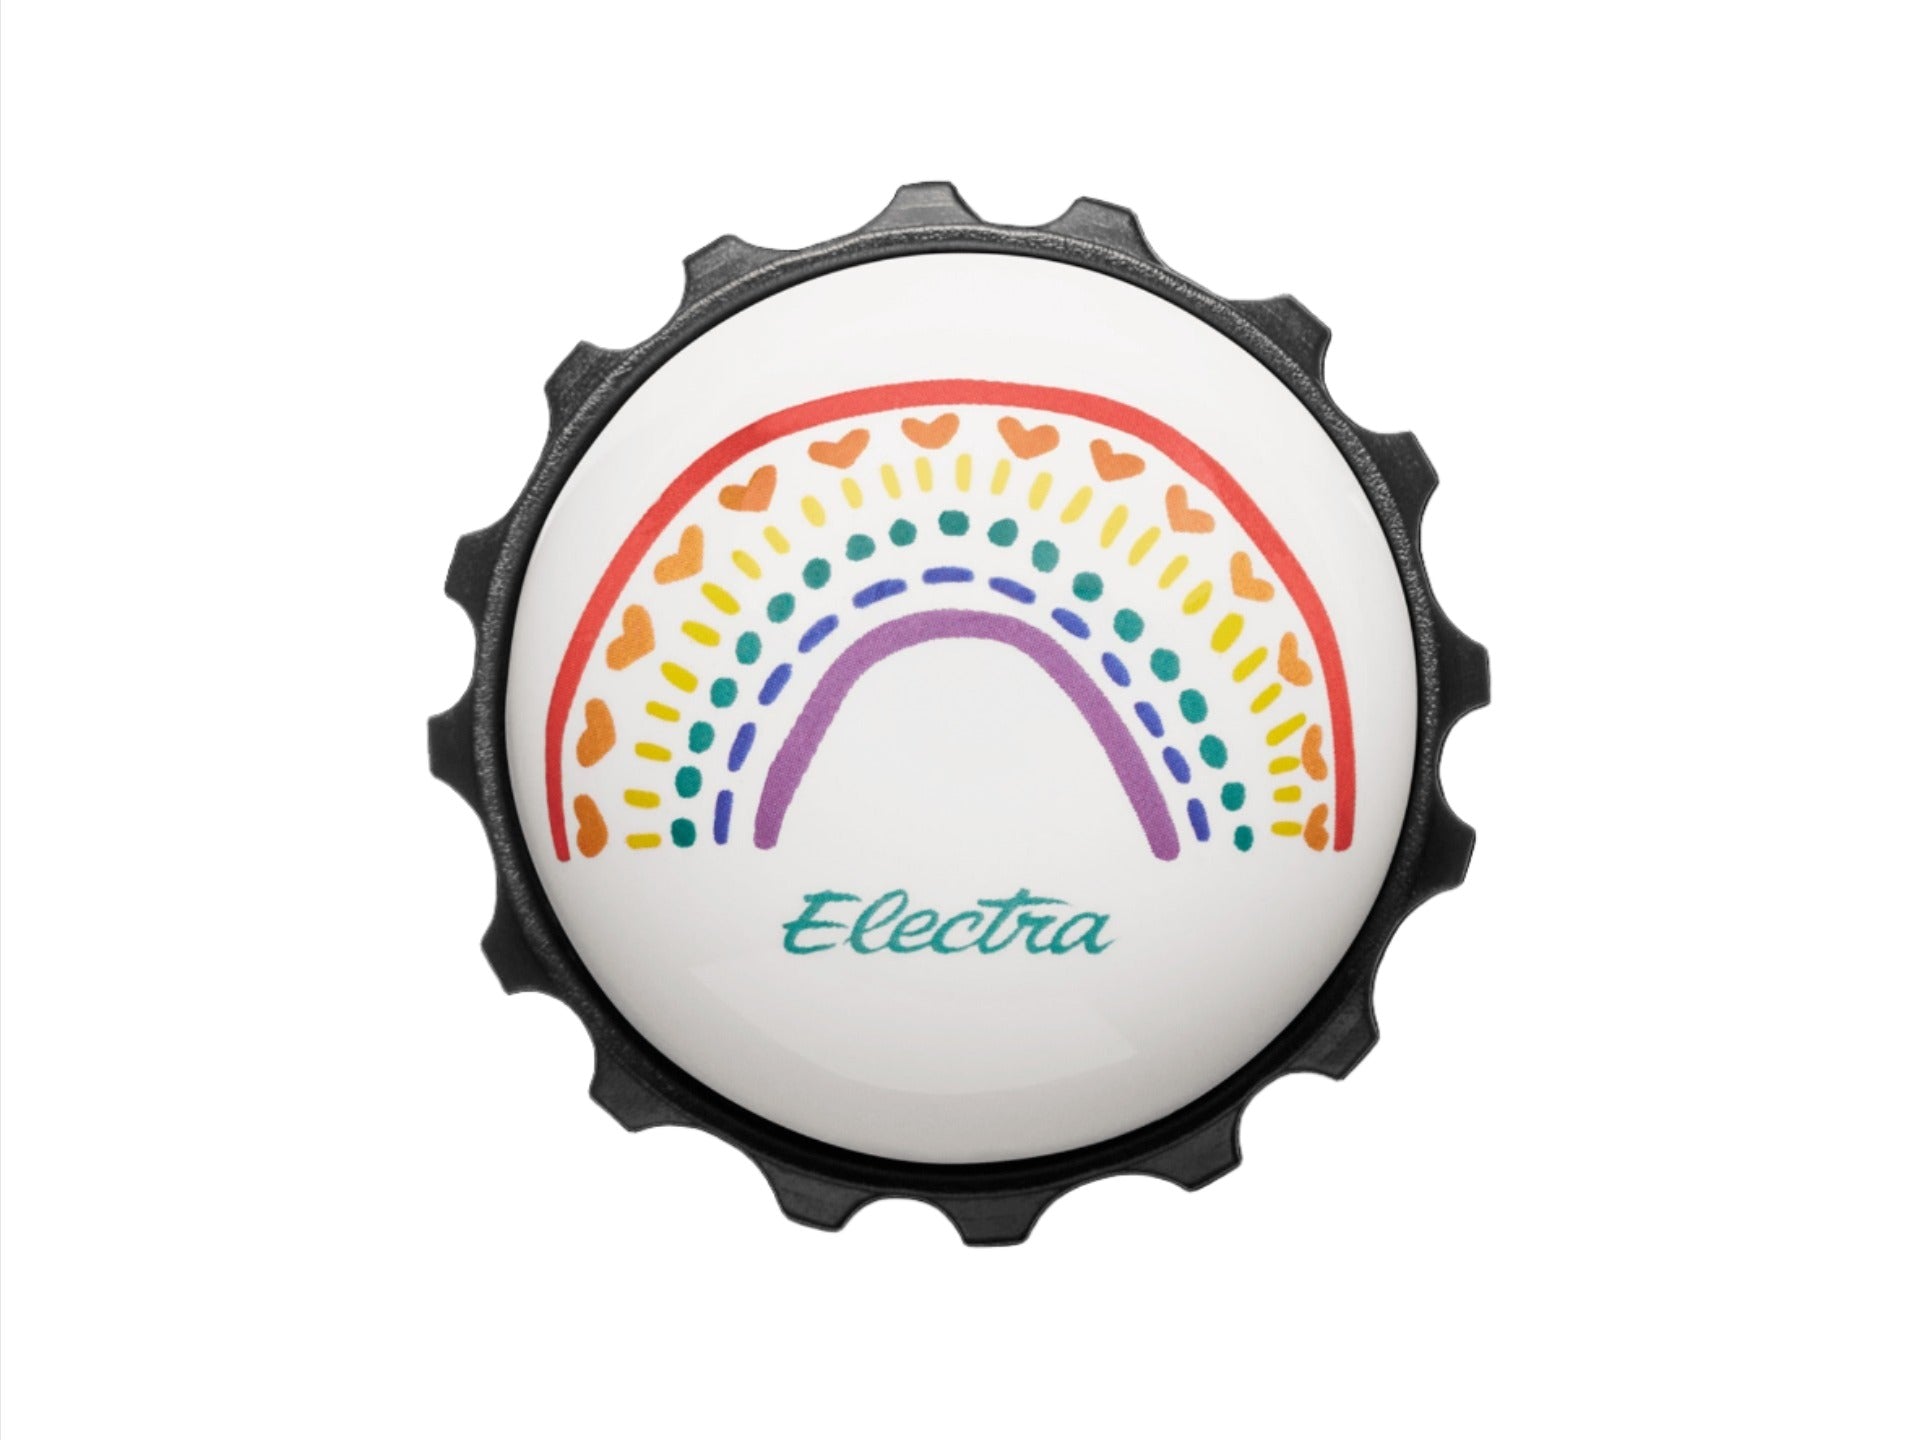 Electra True Colors Twister Bike Bell